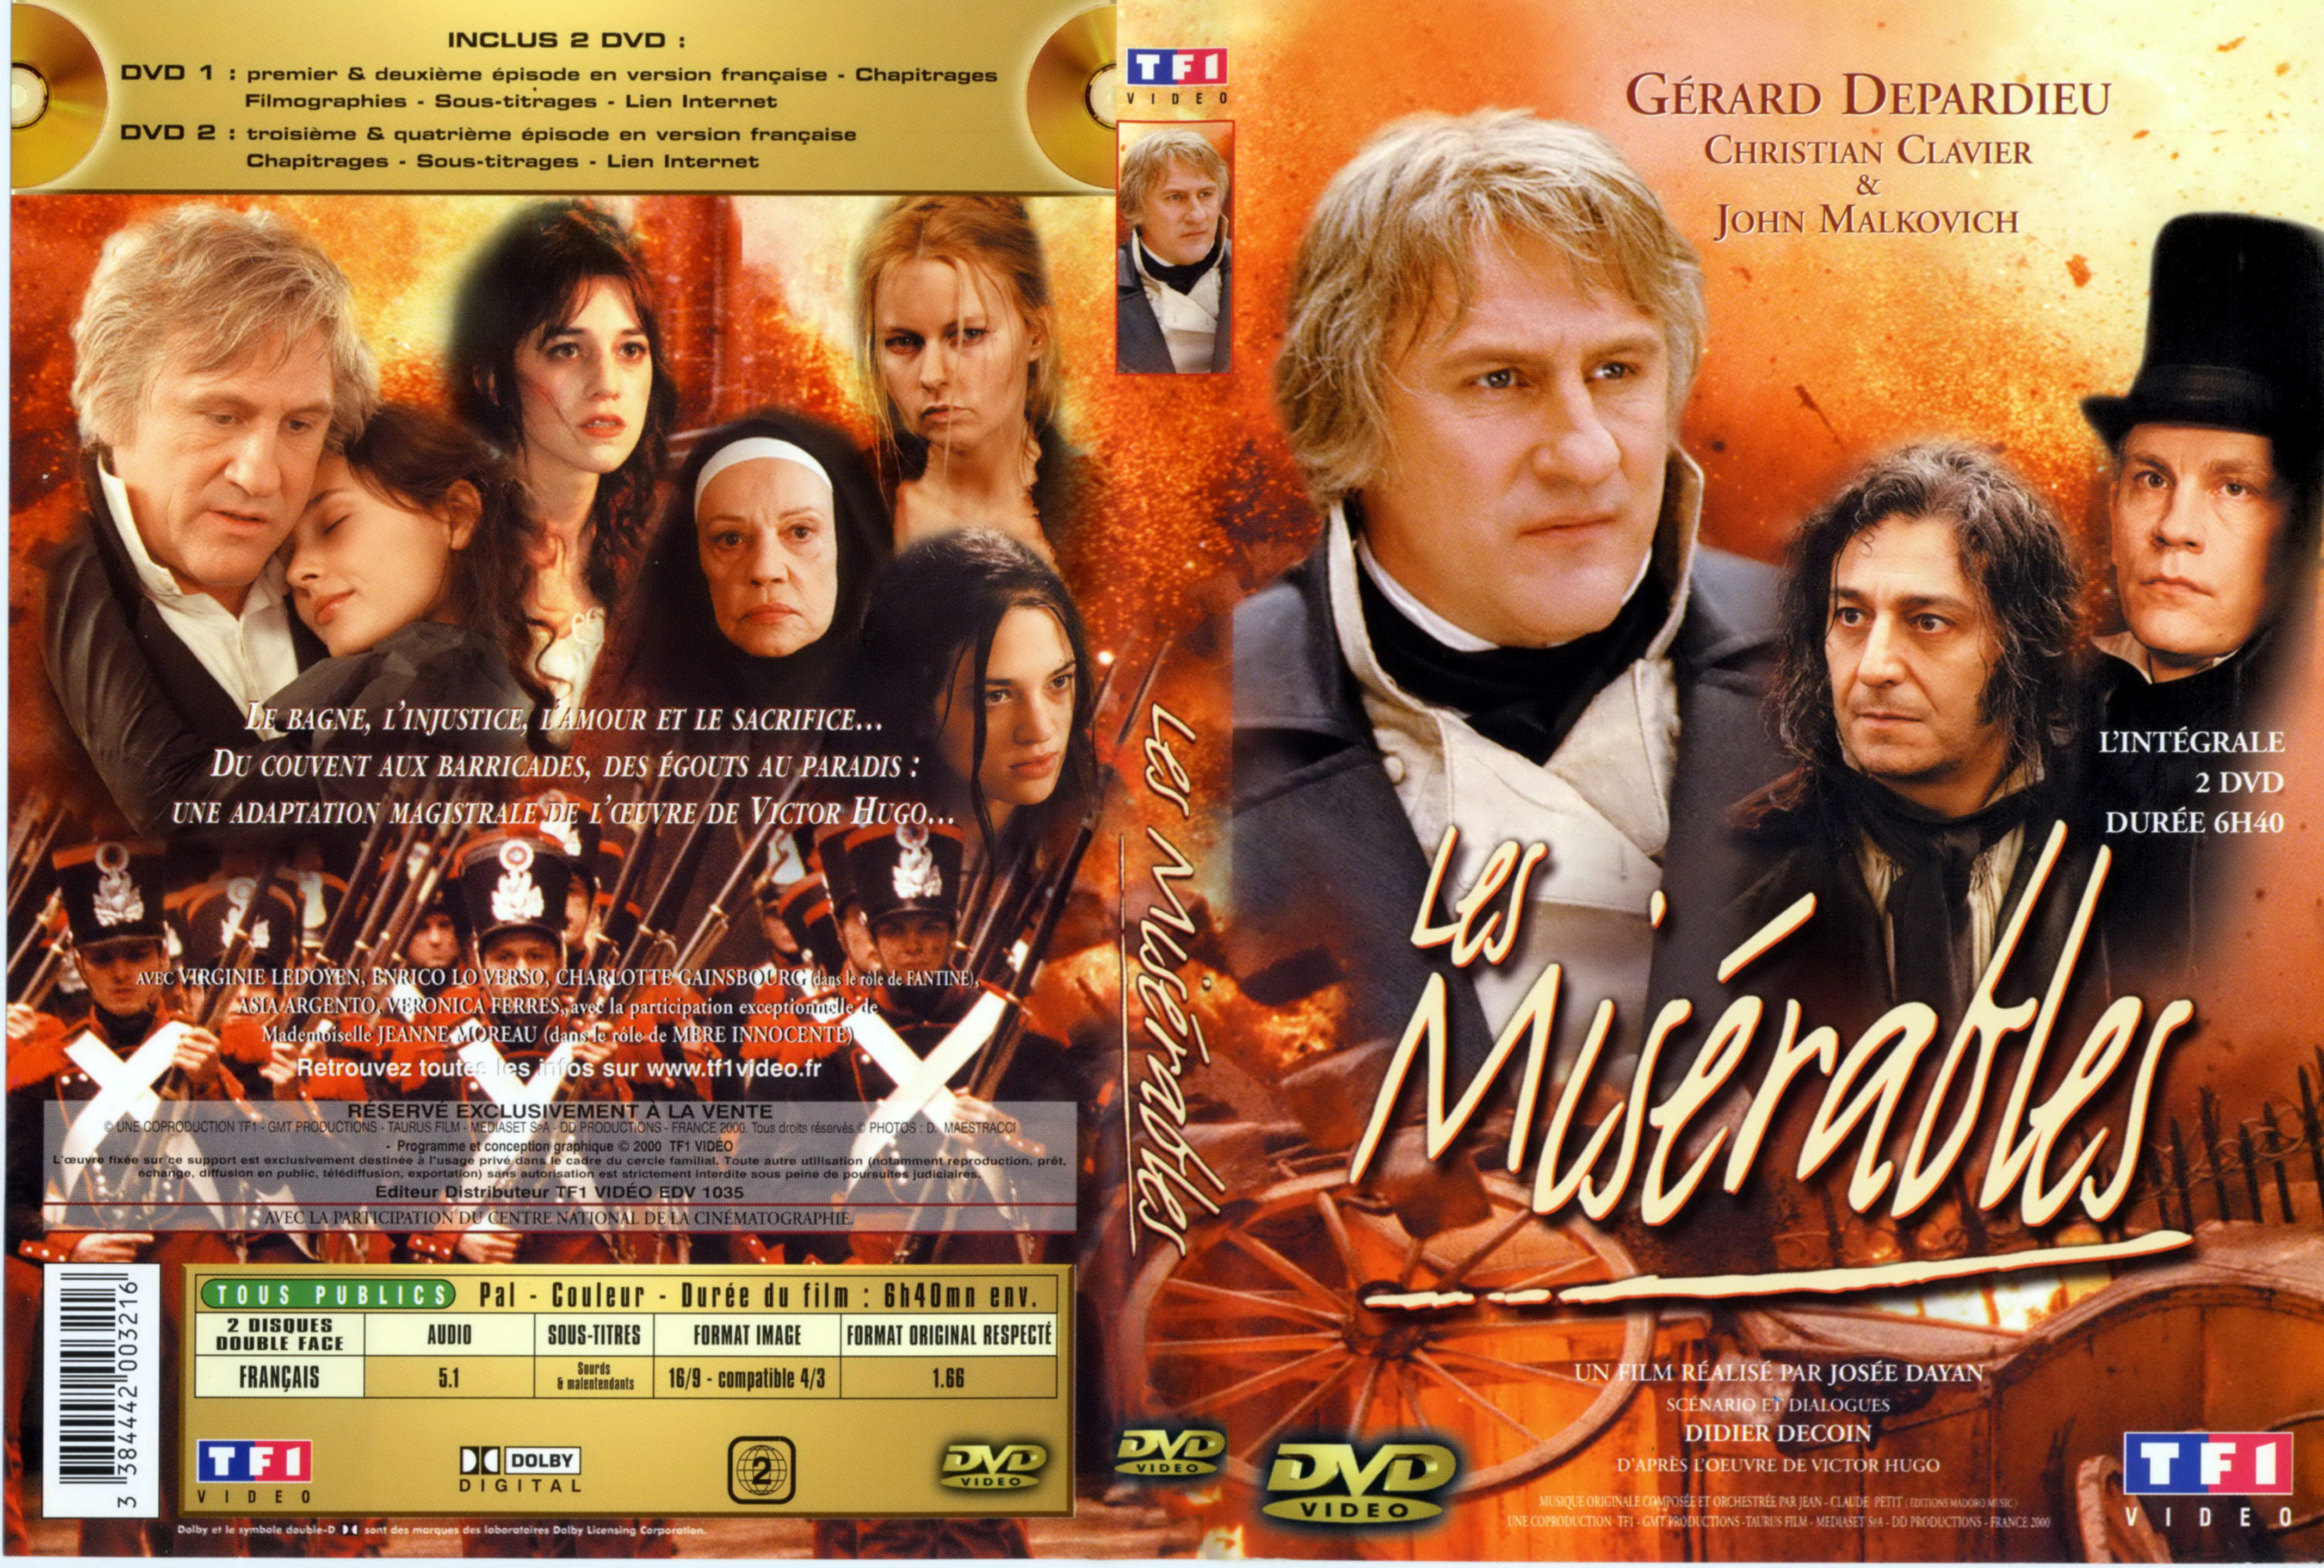 Jaquette DVD Les misrables (Depardieu)